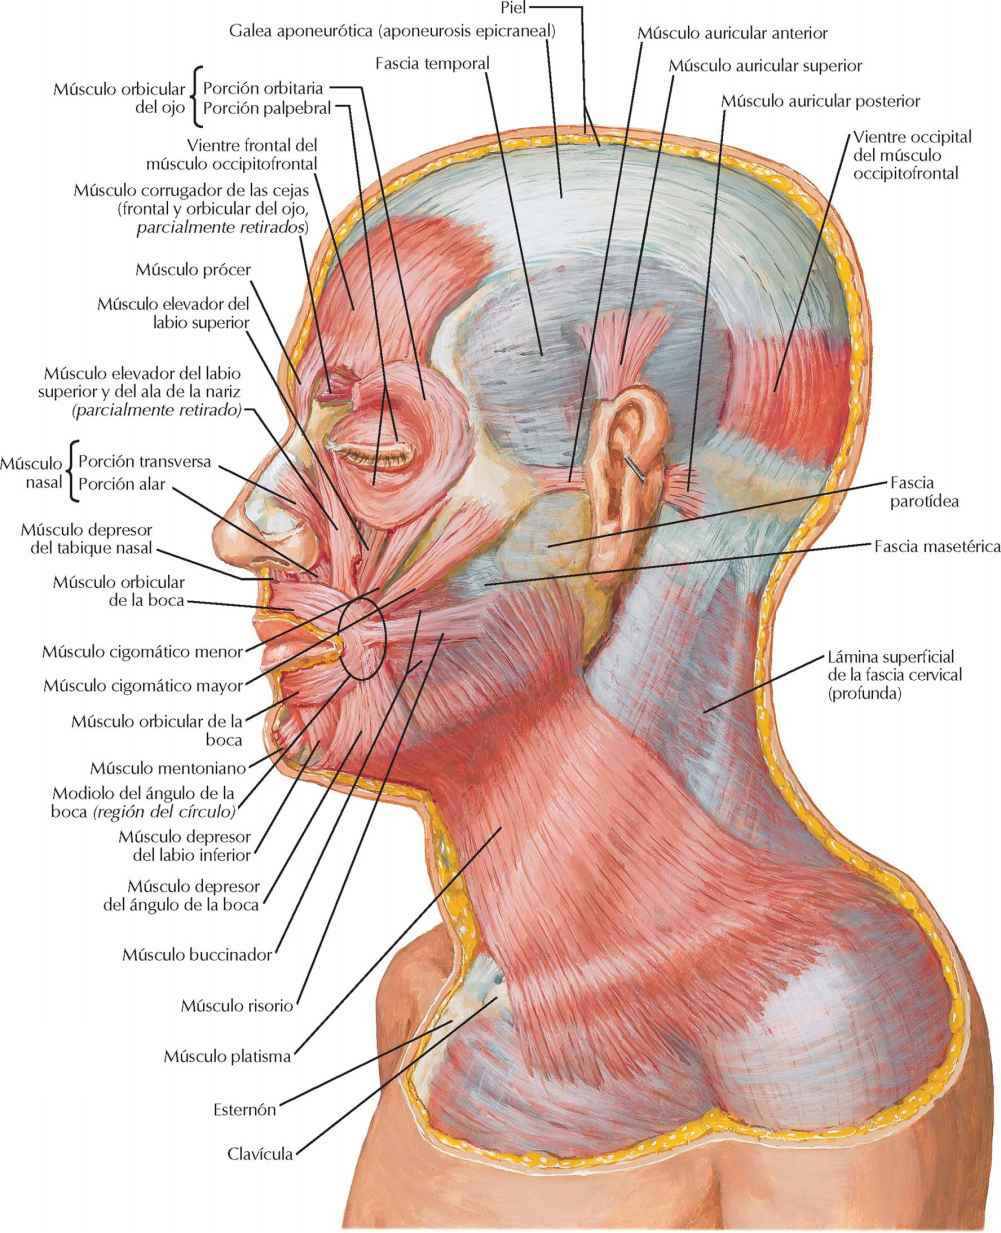 Músculos faciales (de la mímica): visión
lateral.